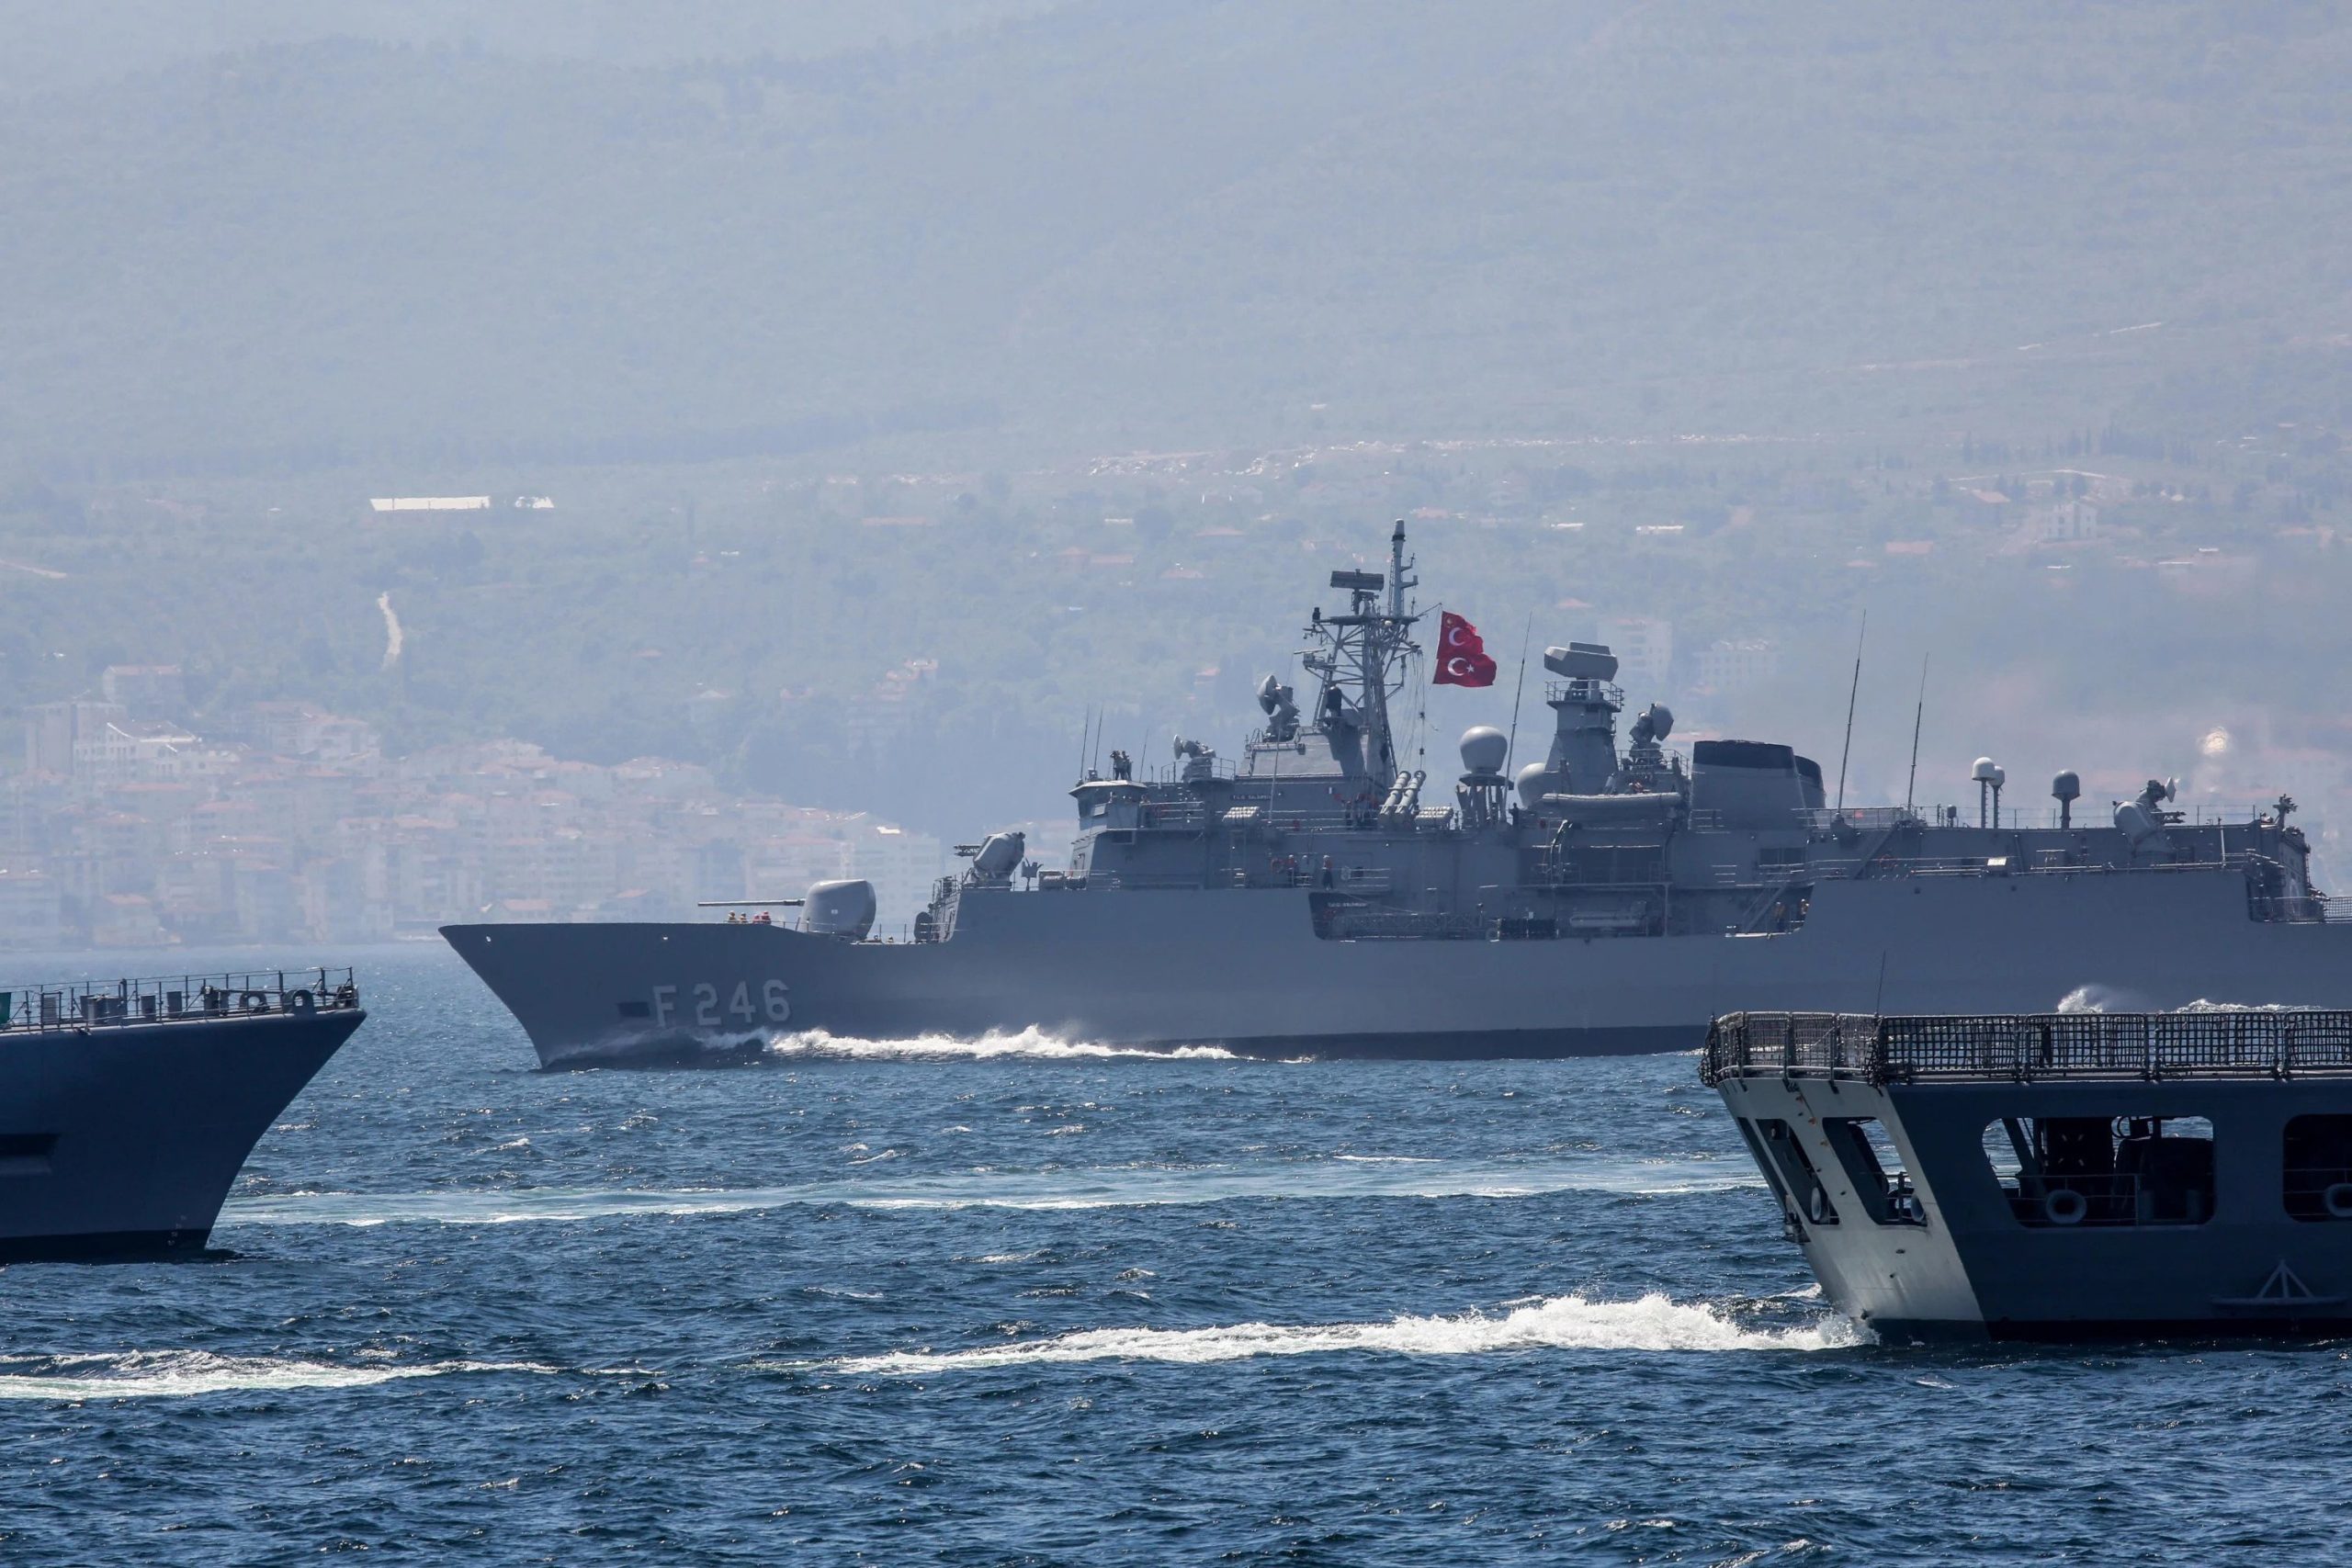 Τουρκικά ΜΜΕ: «Προσχεδιασμένη διπλή προβοκάτσια της Ελλάδας κατά της Τουρκίας το περιστατικό με το γαλλικό πλοίο»